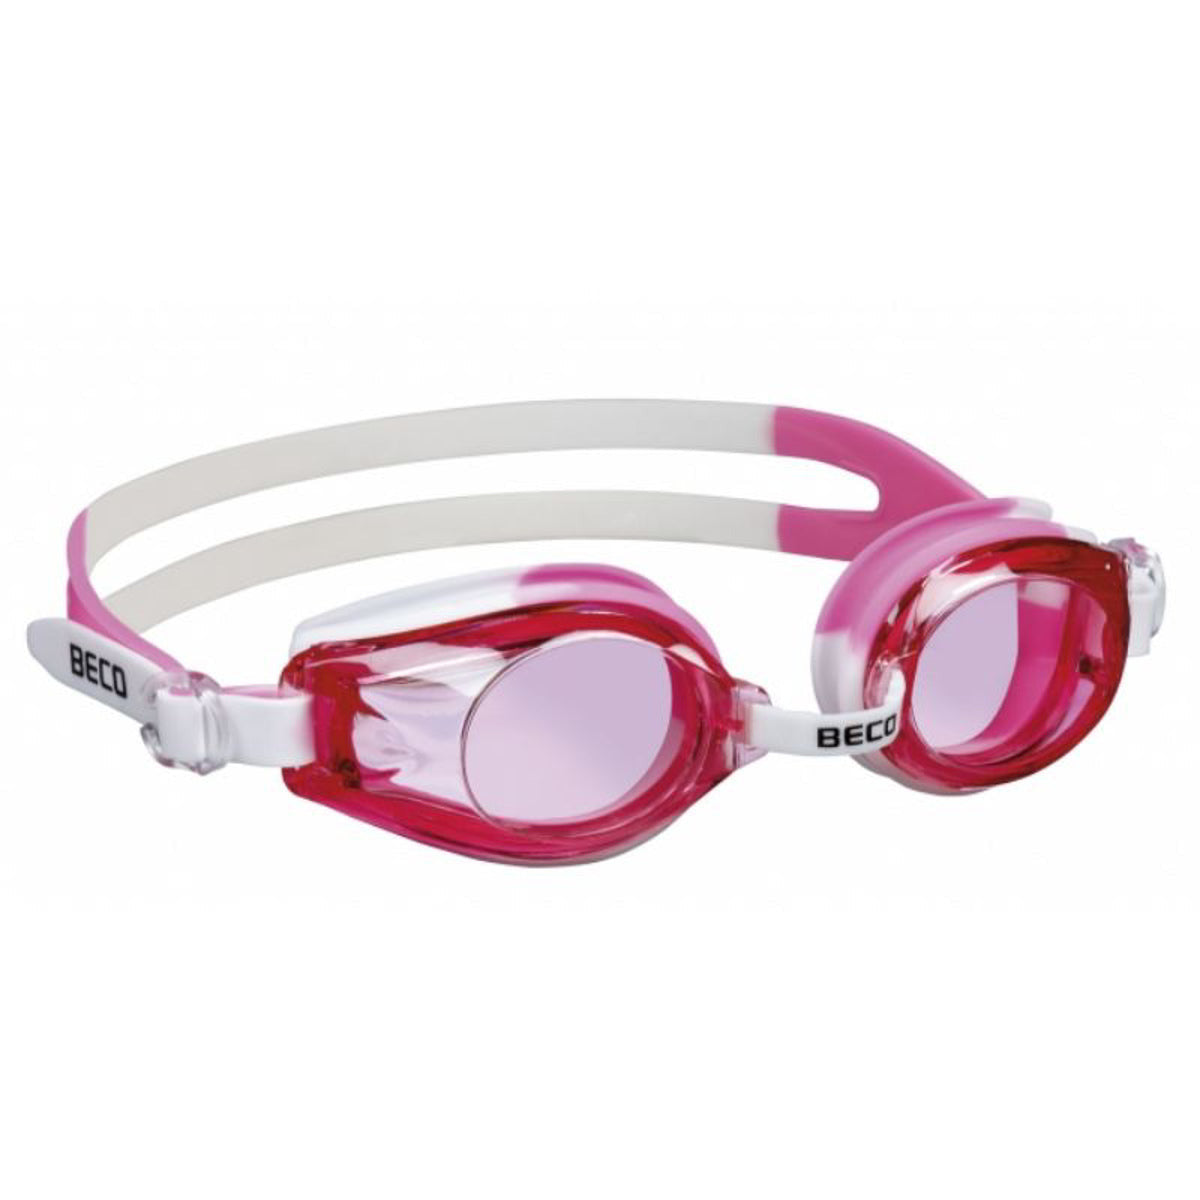 BECO "Rimini" Svømmebriller til børn +12 år - Hvid/Pink